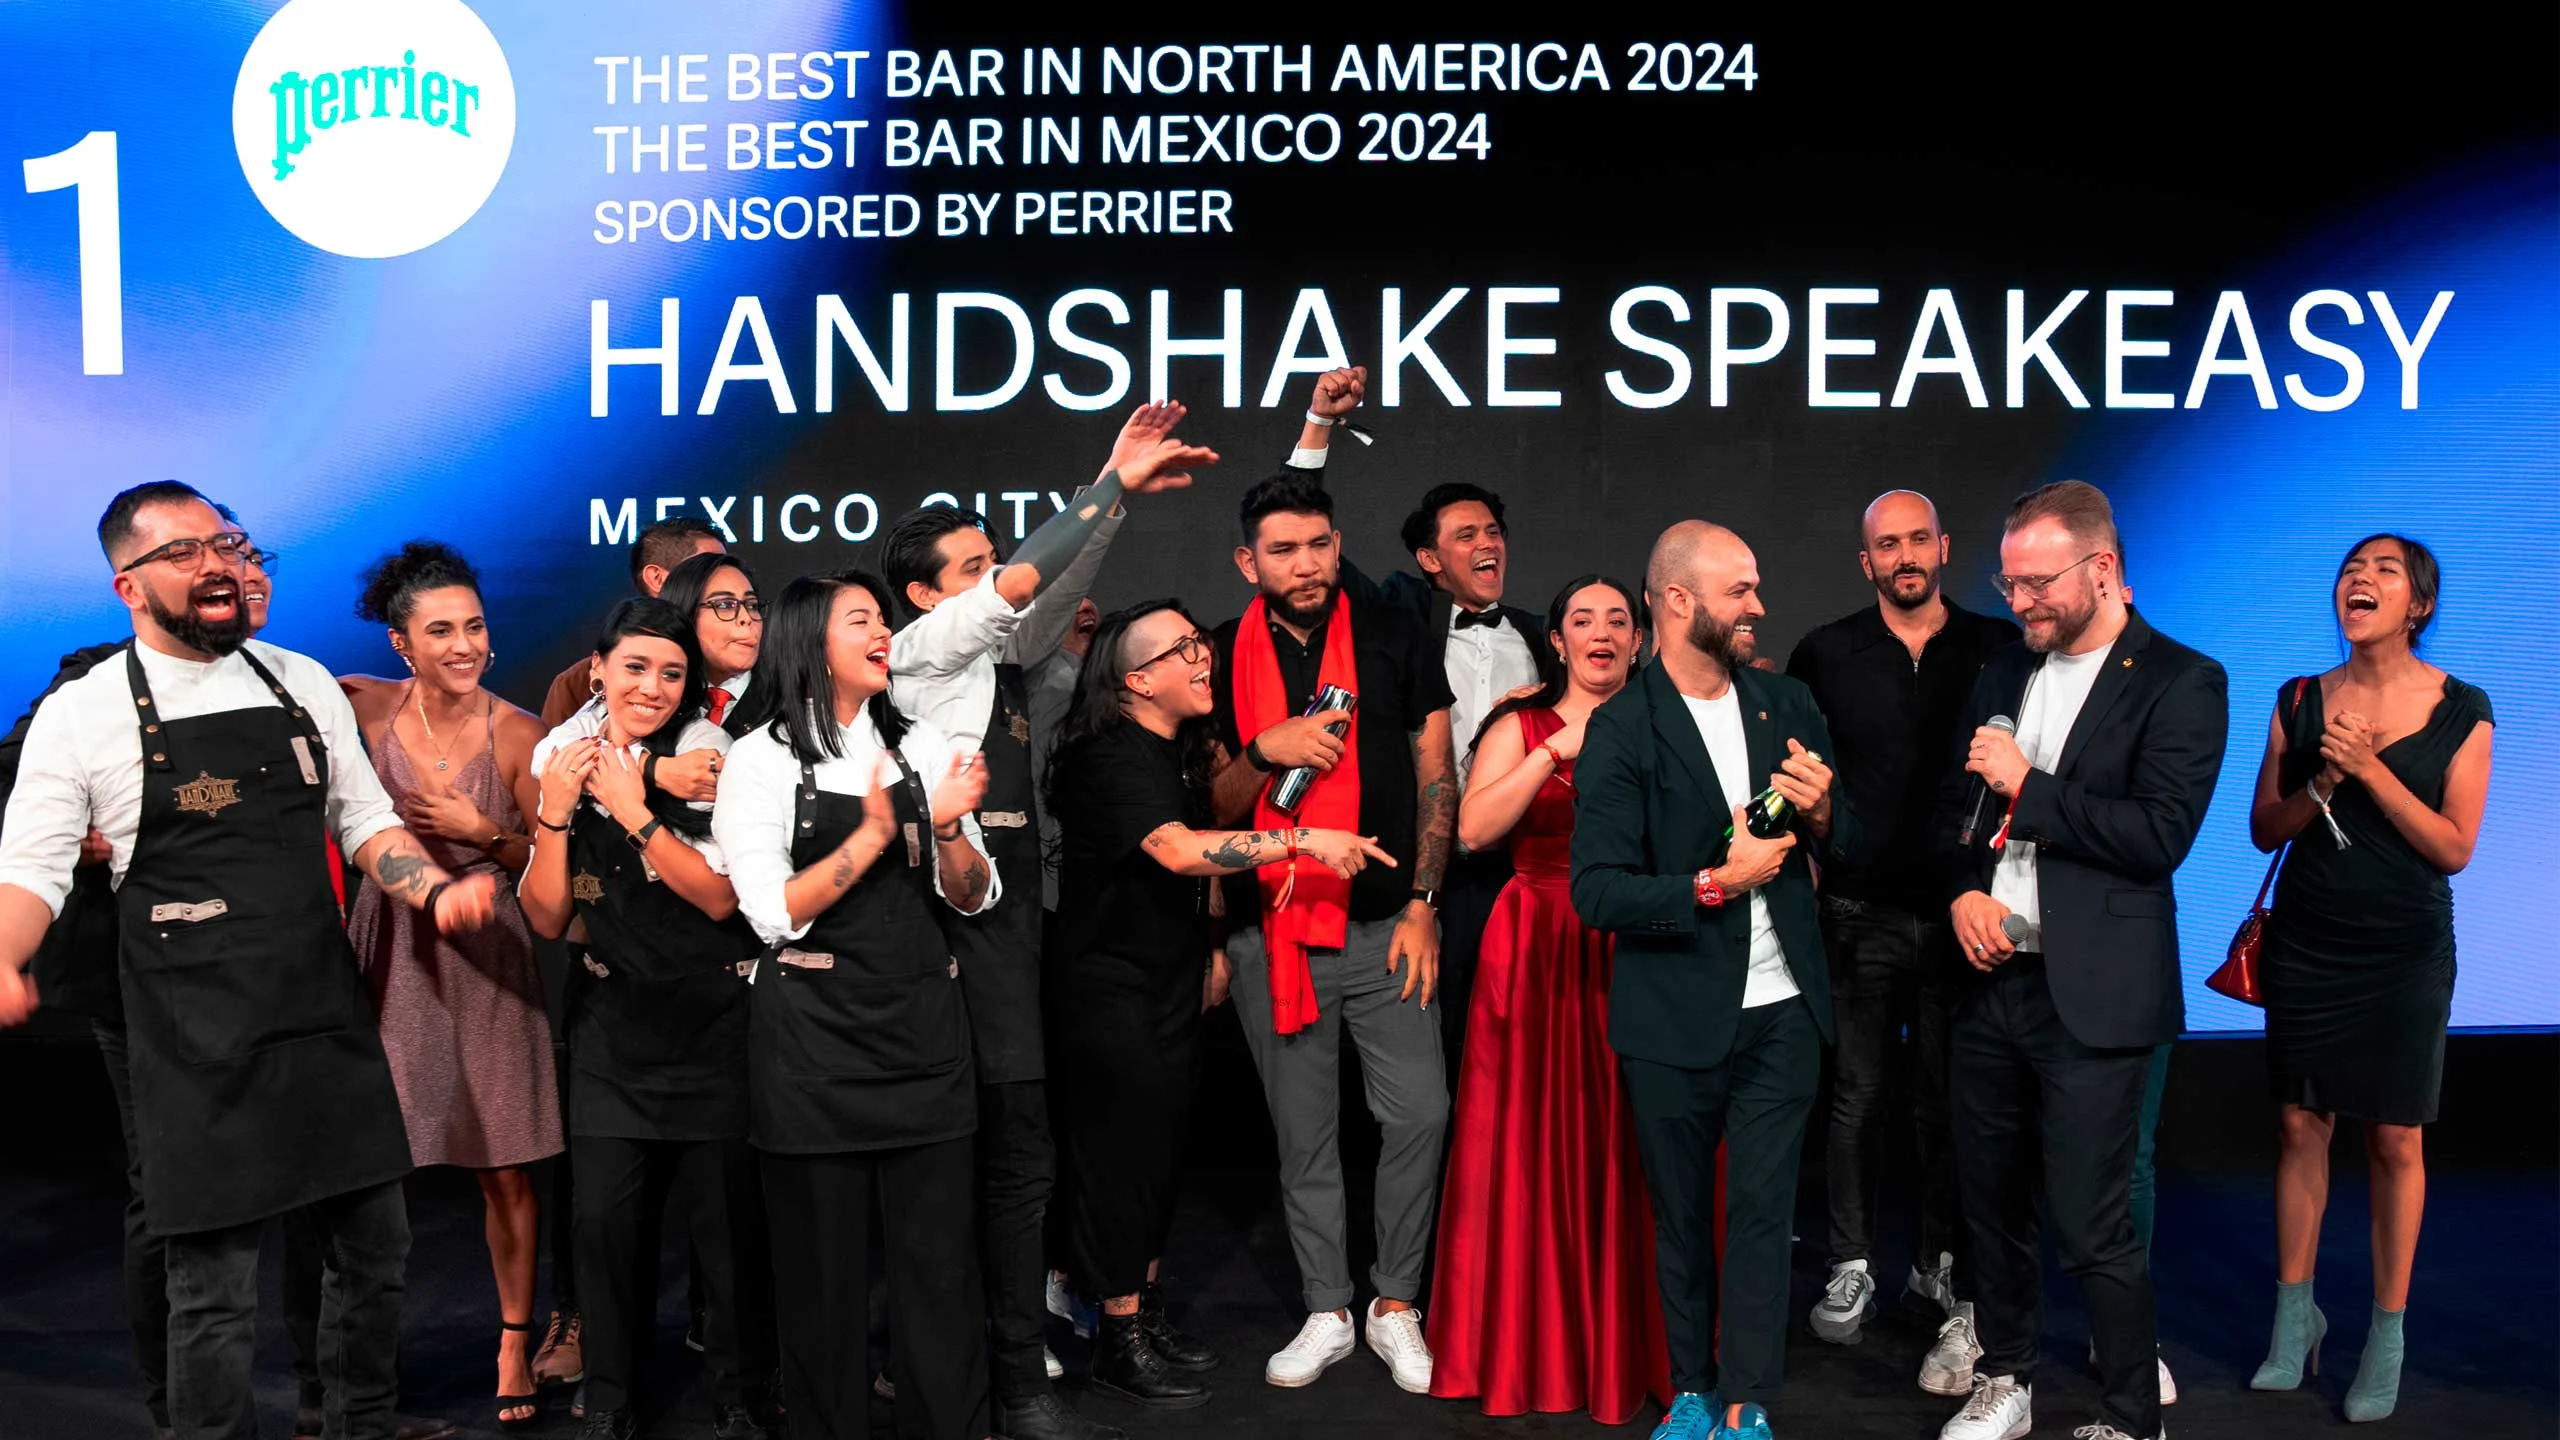 50 Best Bars: Handshake es el mejor el bar de Norteamérica